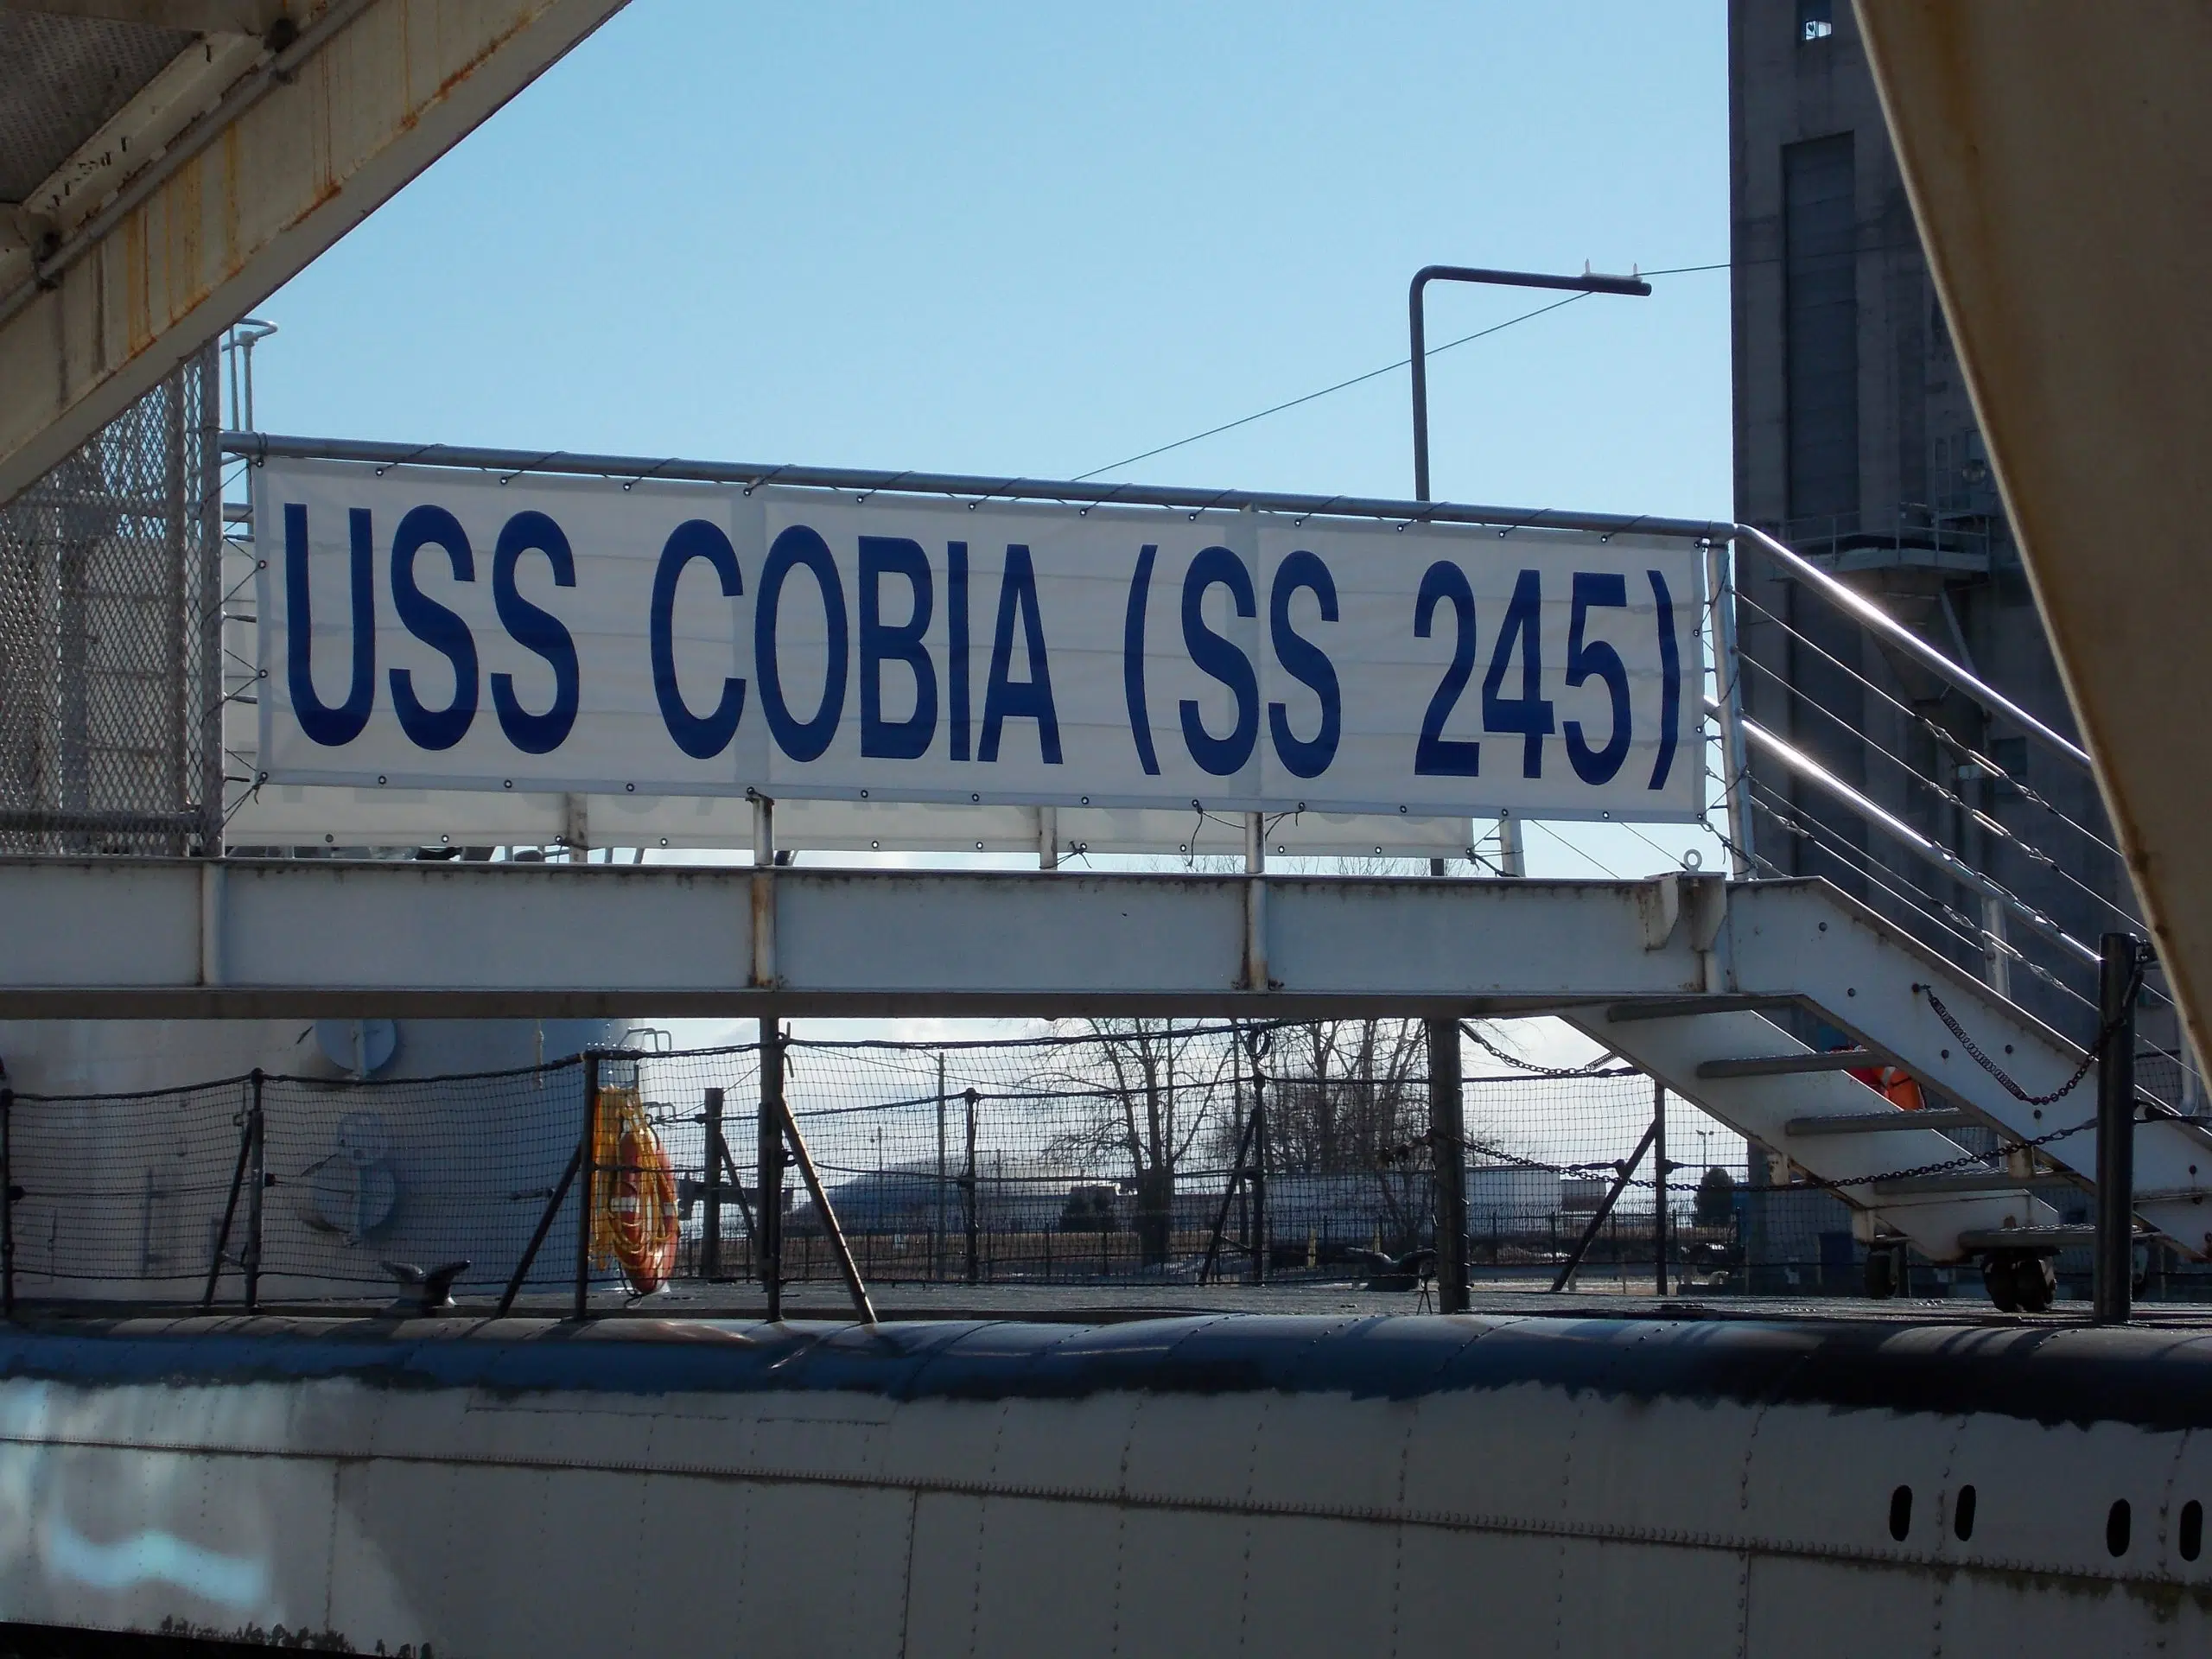 Happy Birthday USS Cobia